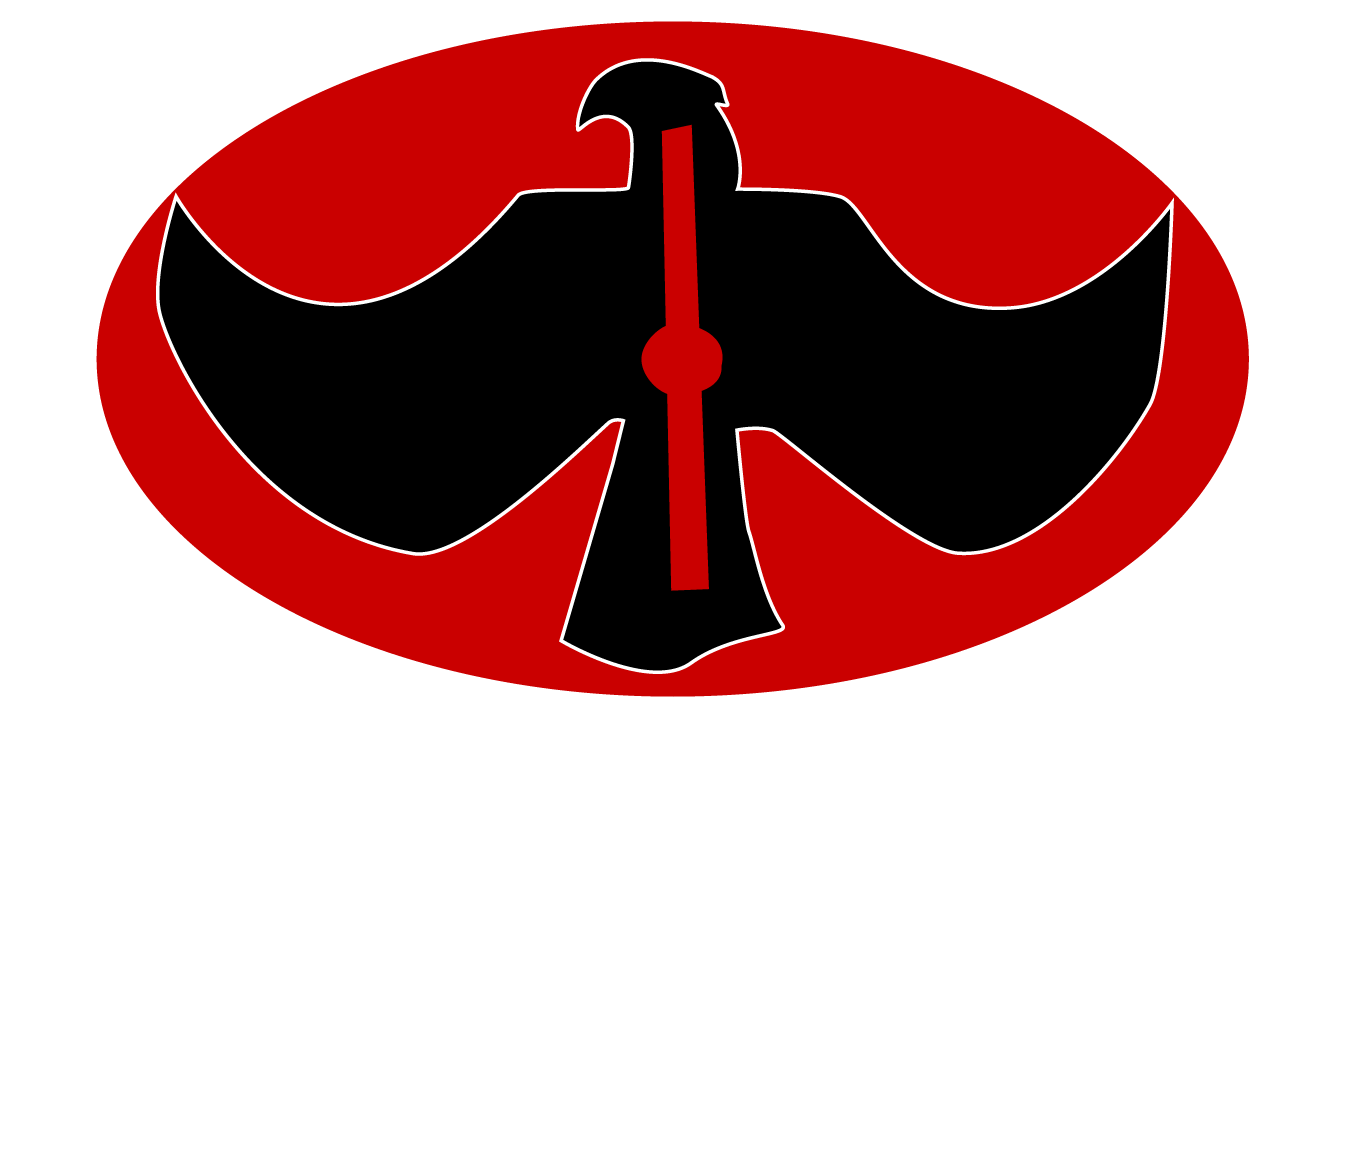 The Refuge